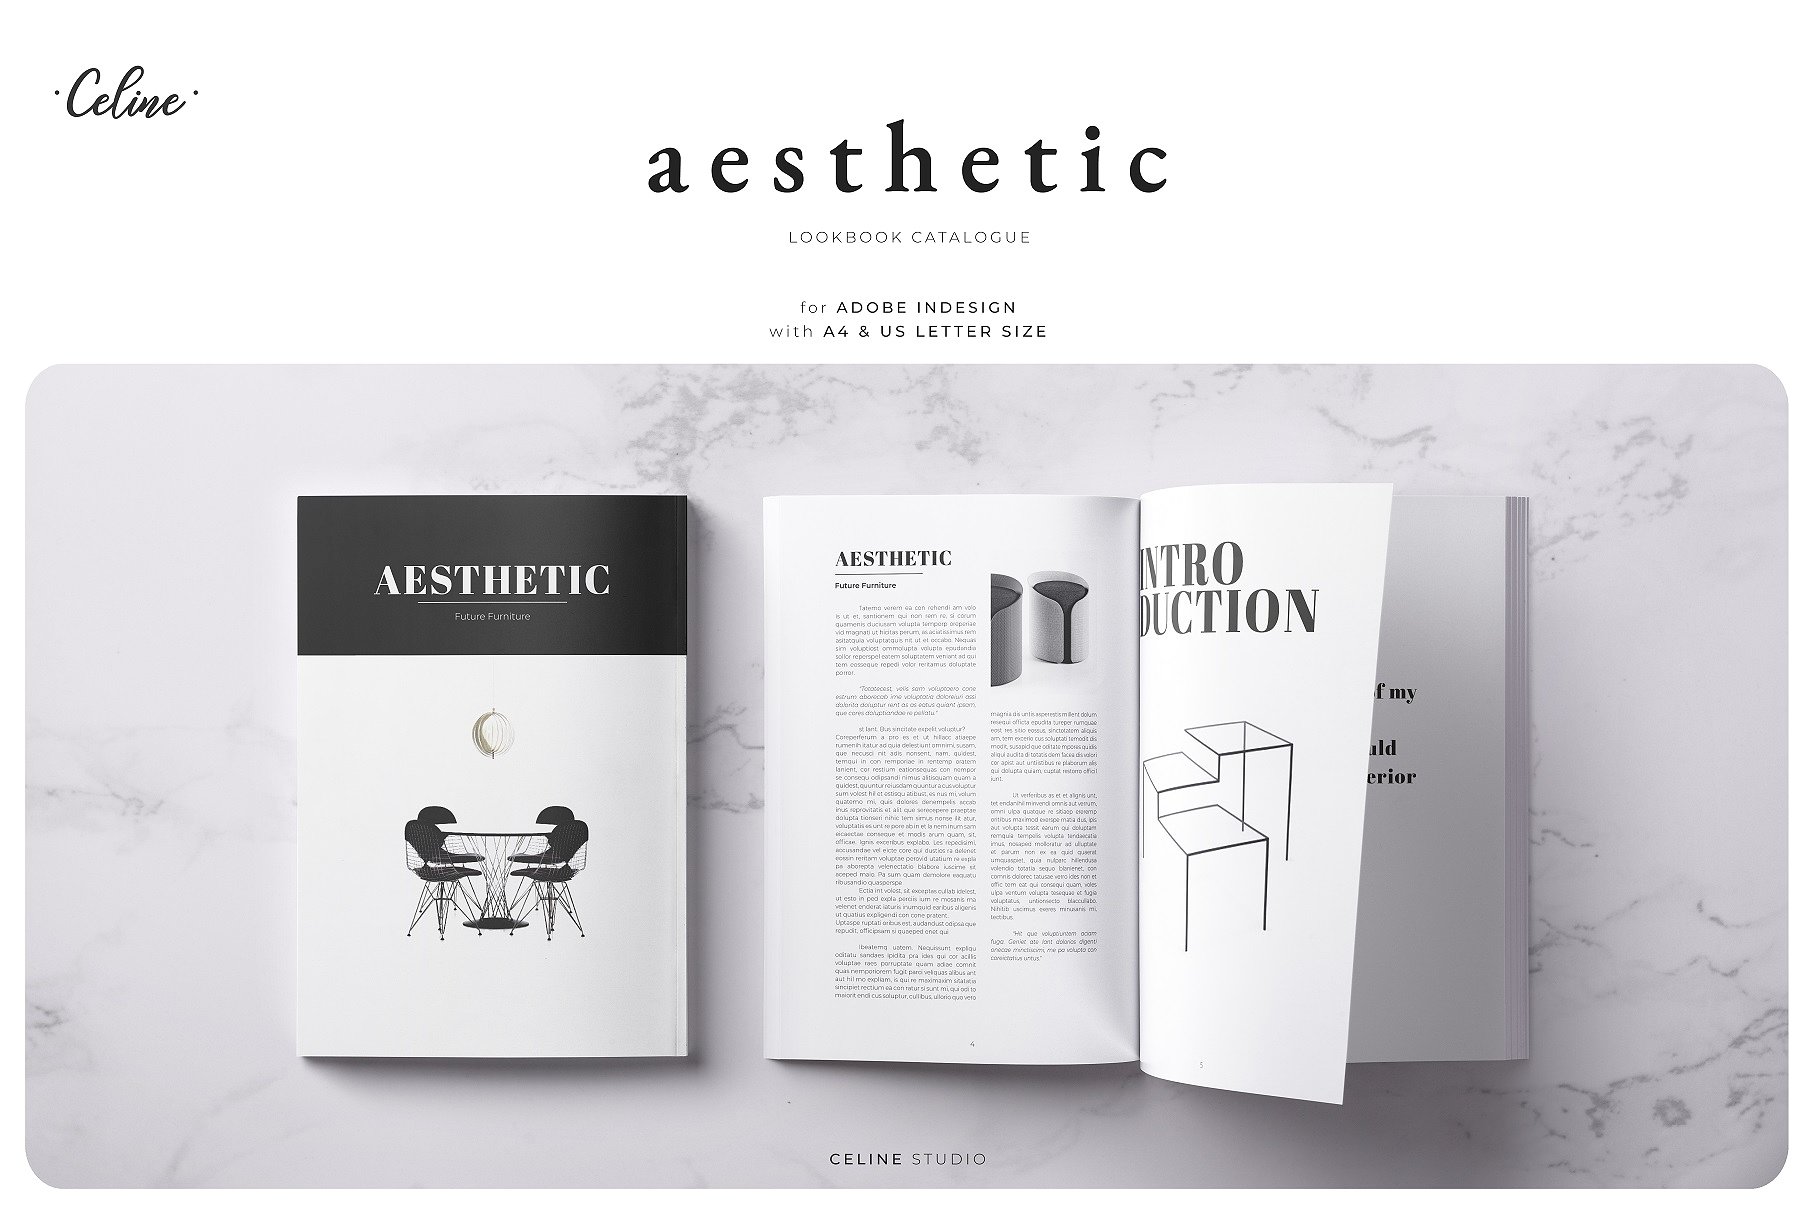 时尚家具设计产品促销A4画册杂志Indesign模板 Fashion Furniture Design Product Promotion A4 Album Magazine Indesign Template插图